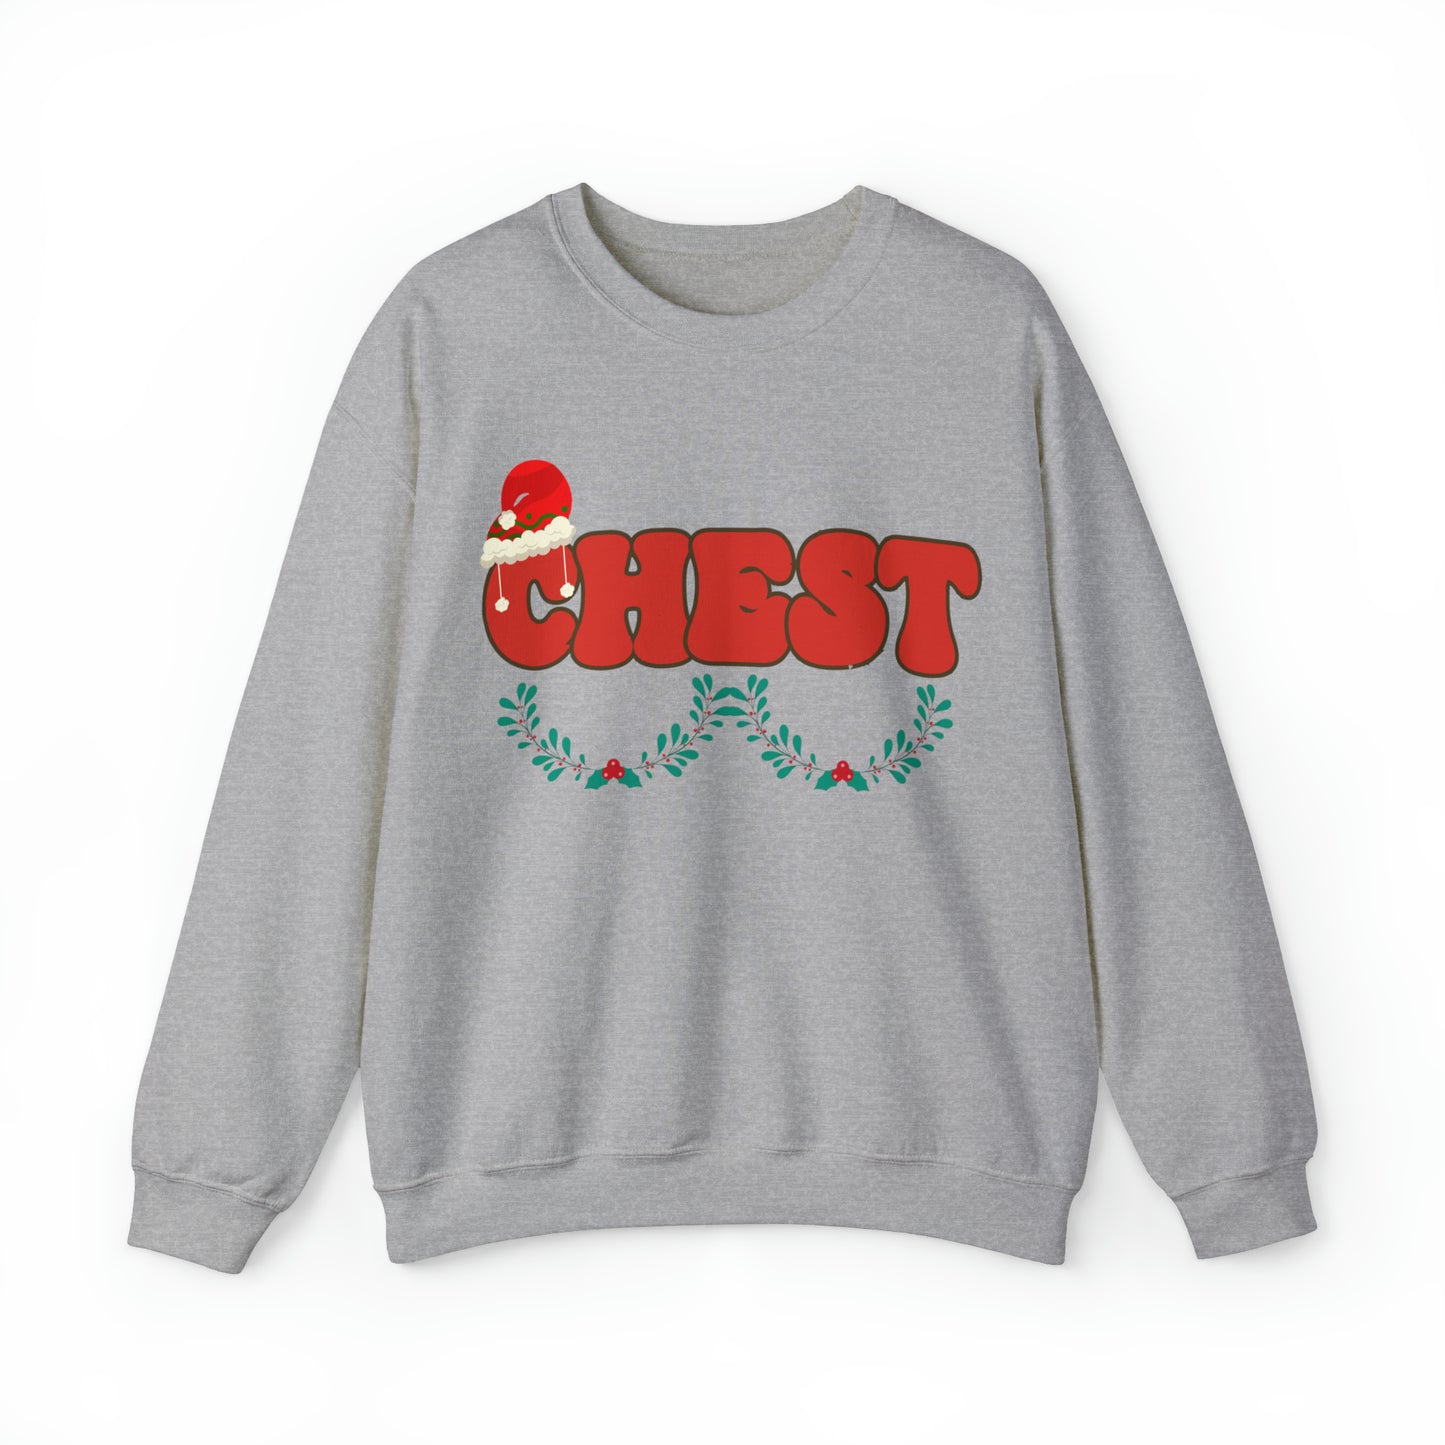 Couple Chest Nuts Crewneck Sweatshirt, Christmas Holiday Sweatshirt, Christmas Gift for Couples, Funny Matching Christmas Sweatshirt, S950